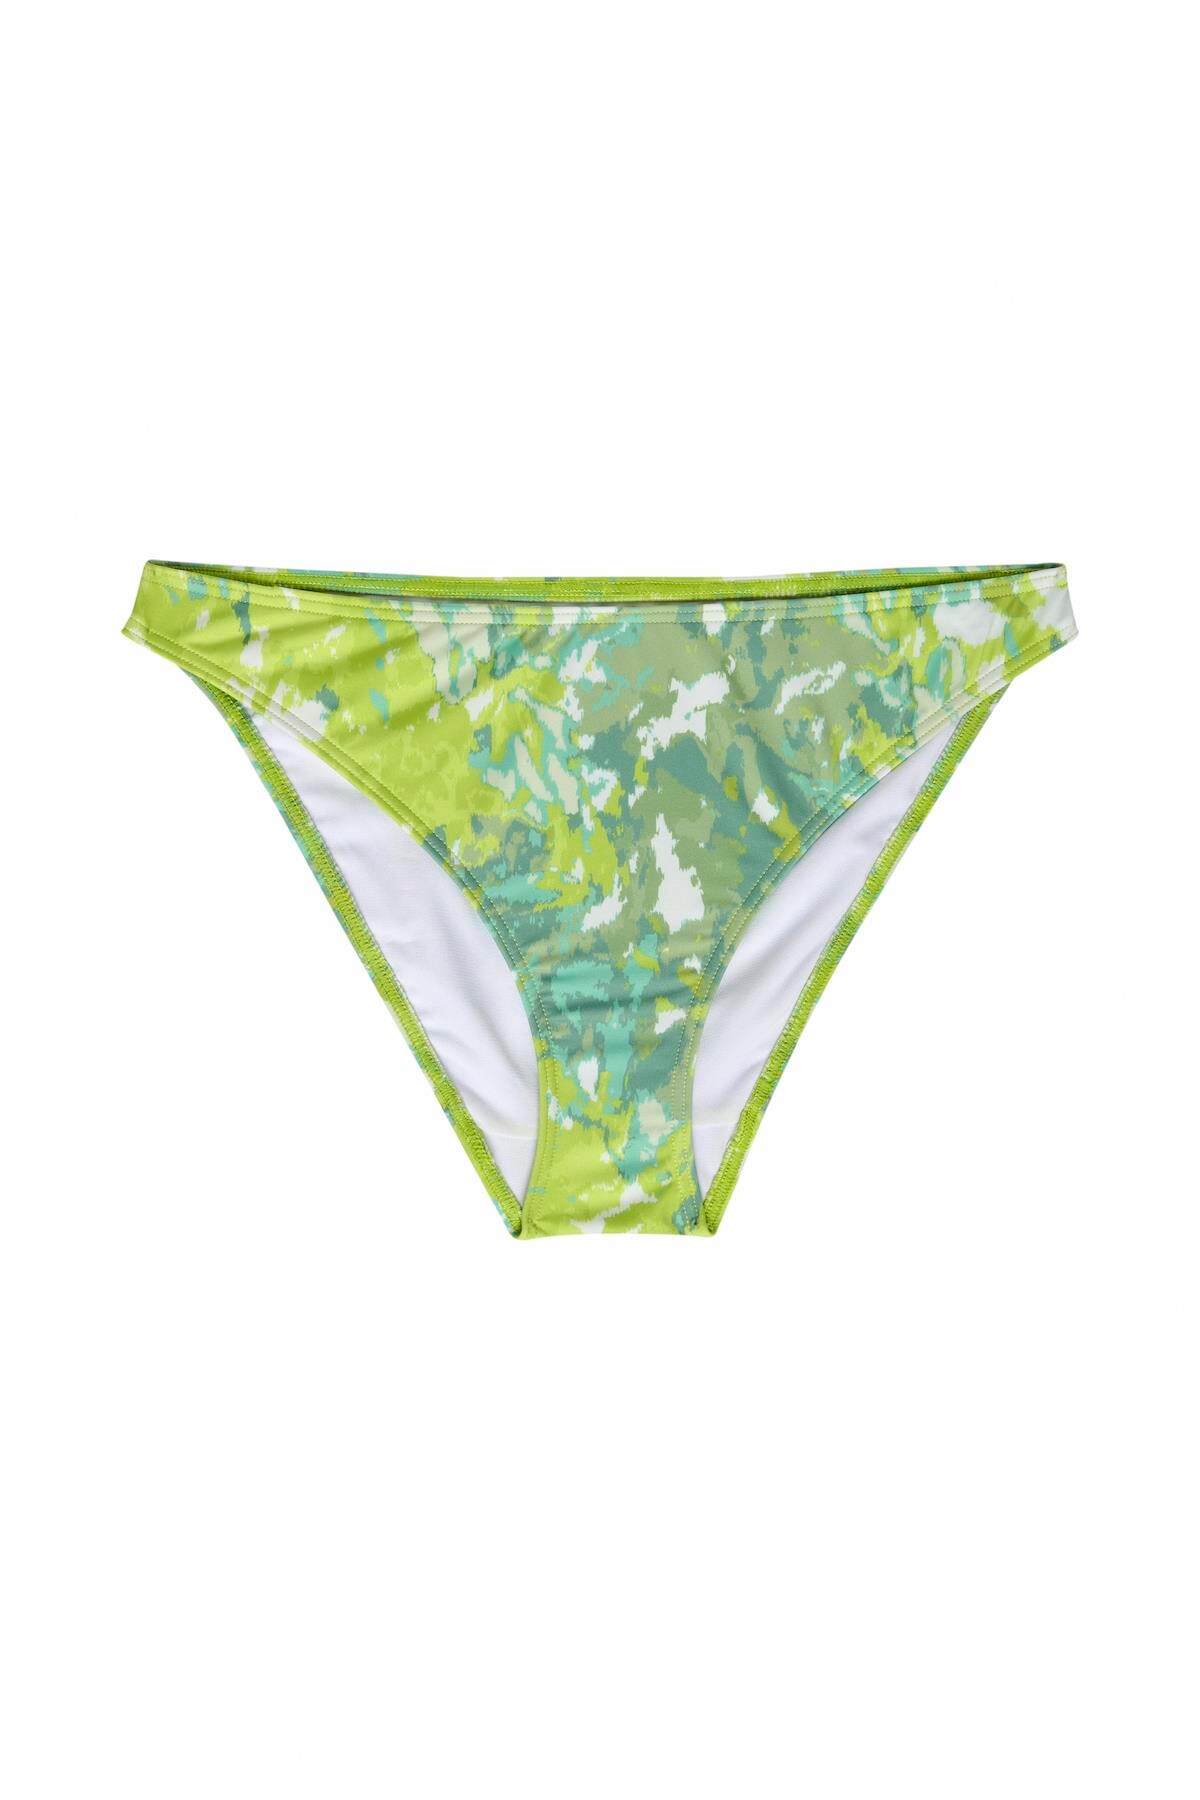 Gestuz Canagz Bikini Trusse, Farve: Grøn Splash, Størrelse: S, Dame